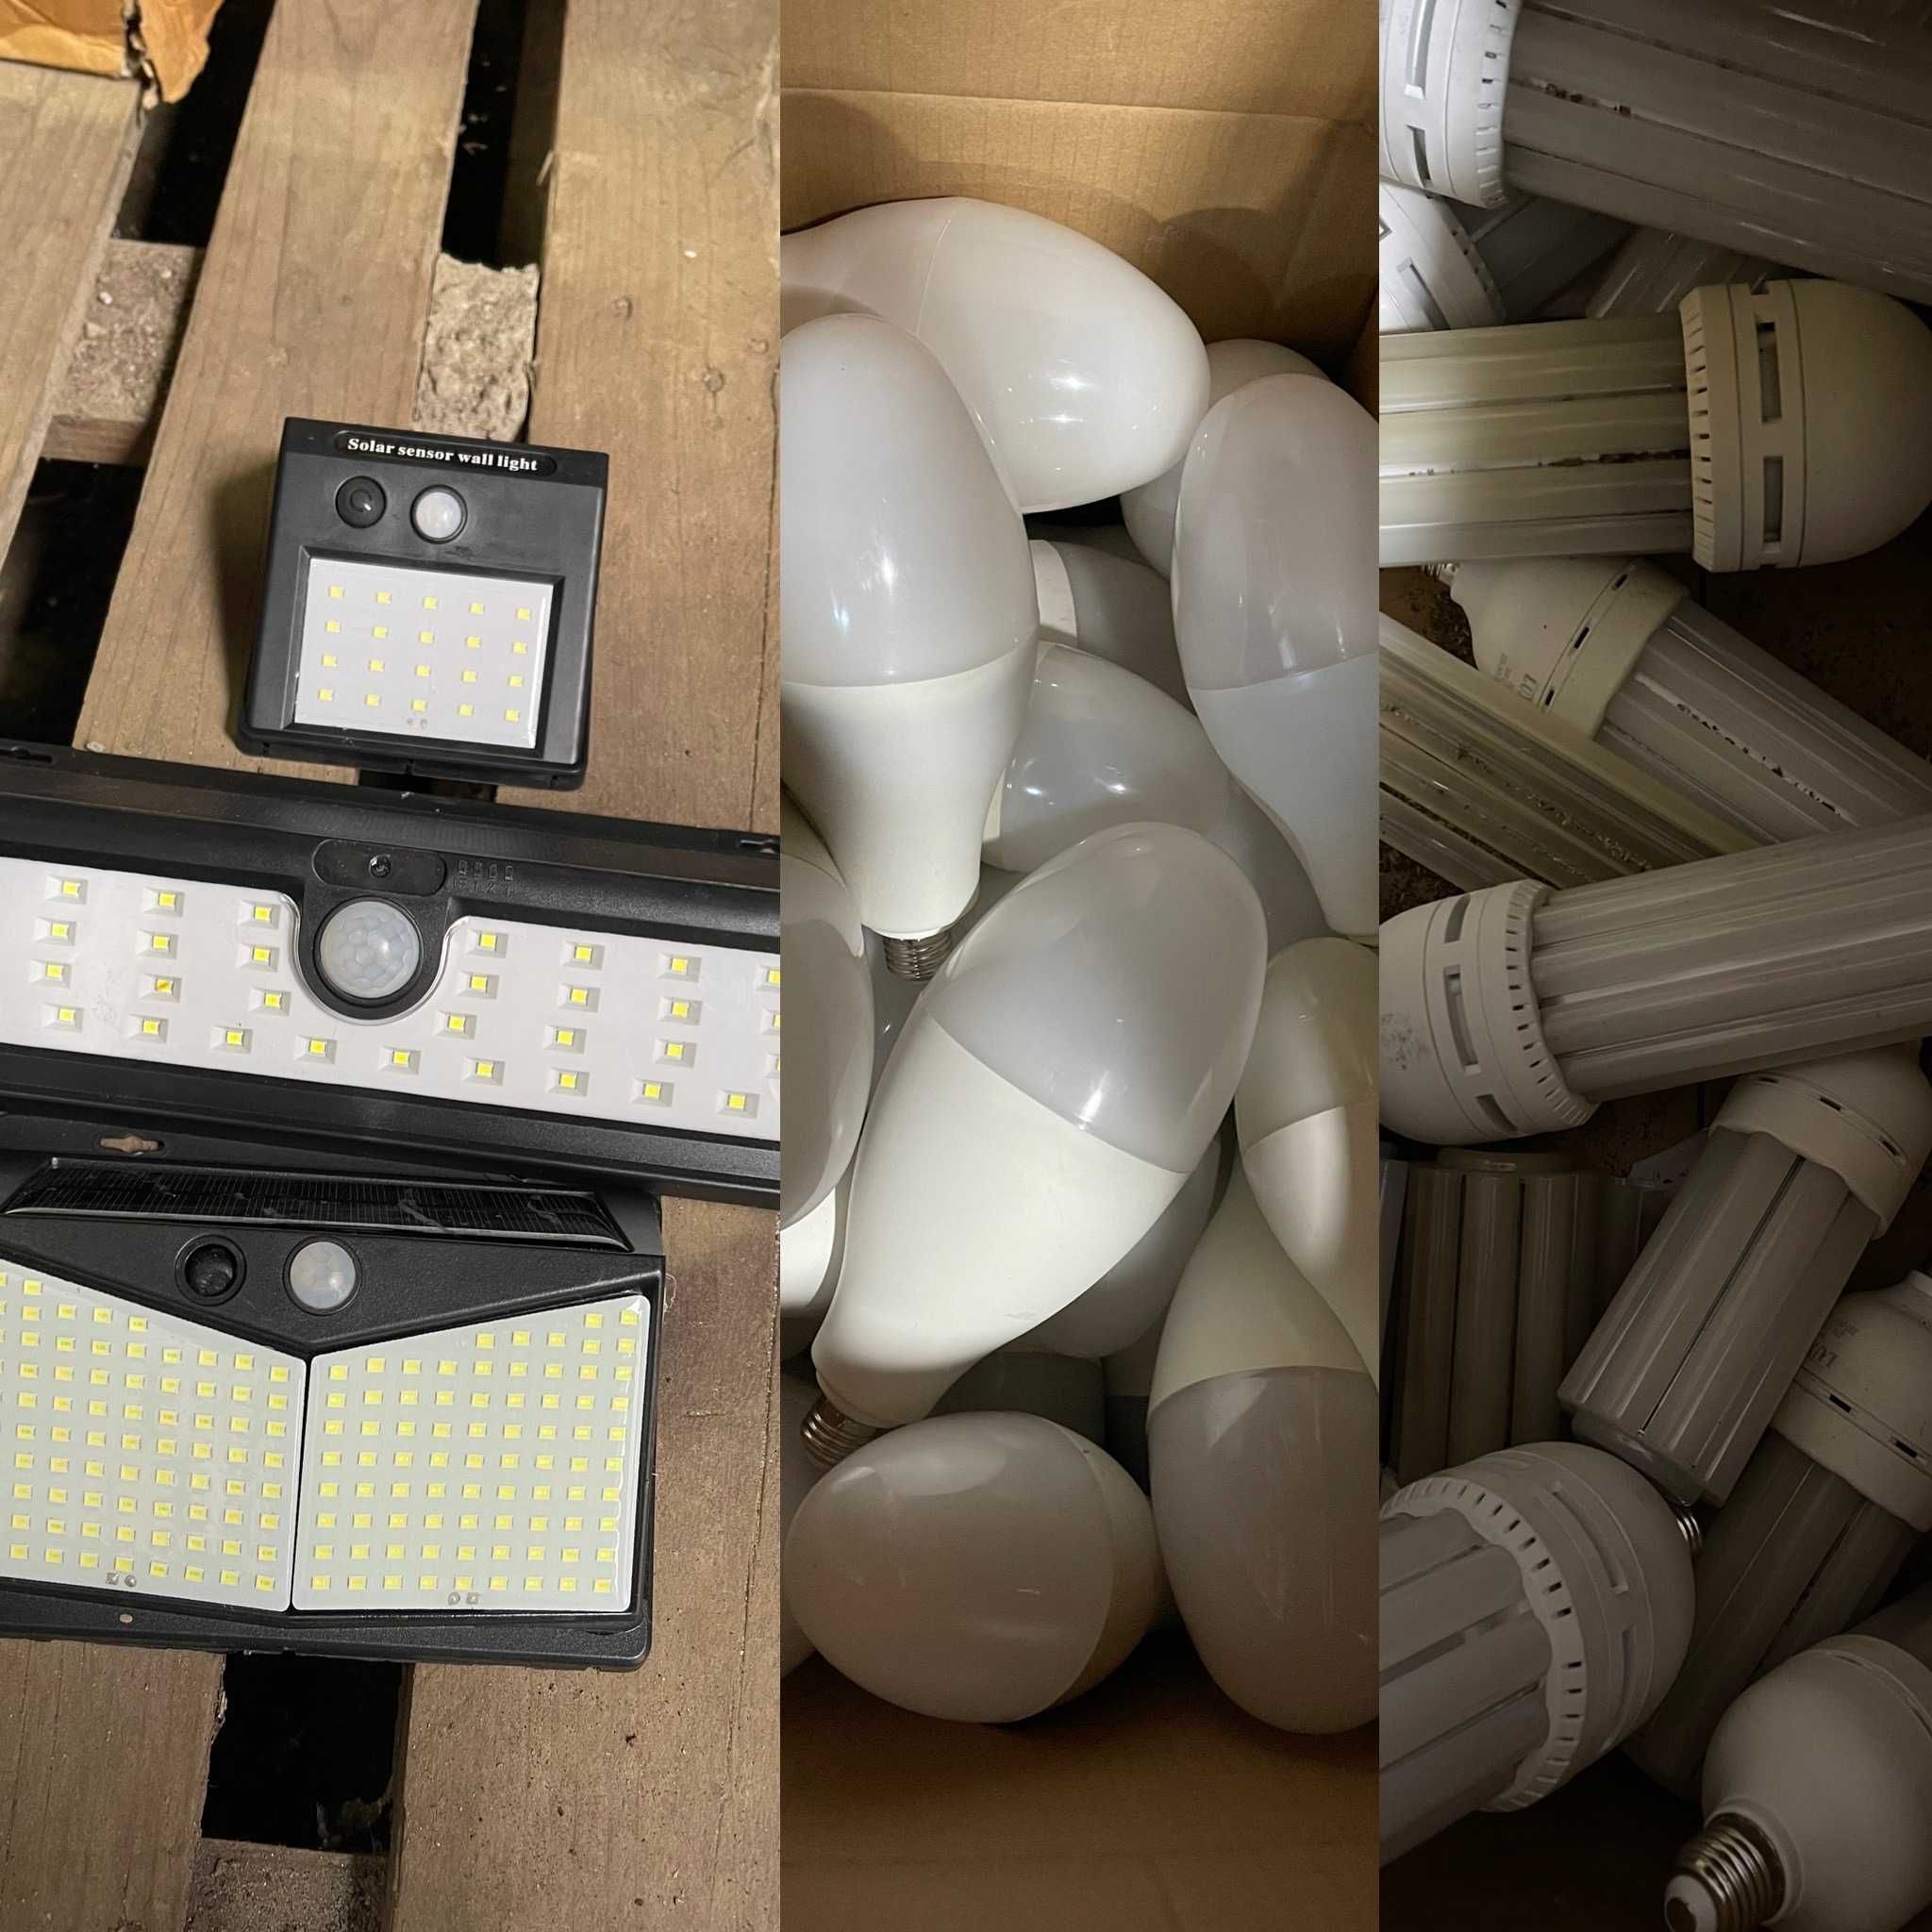 Продам нерабочую LED светотехнику